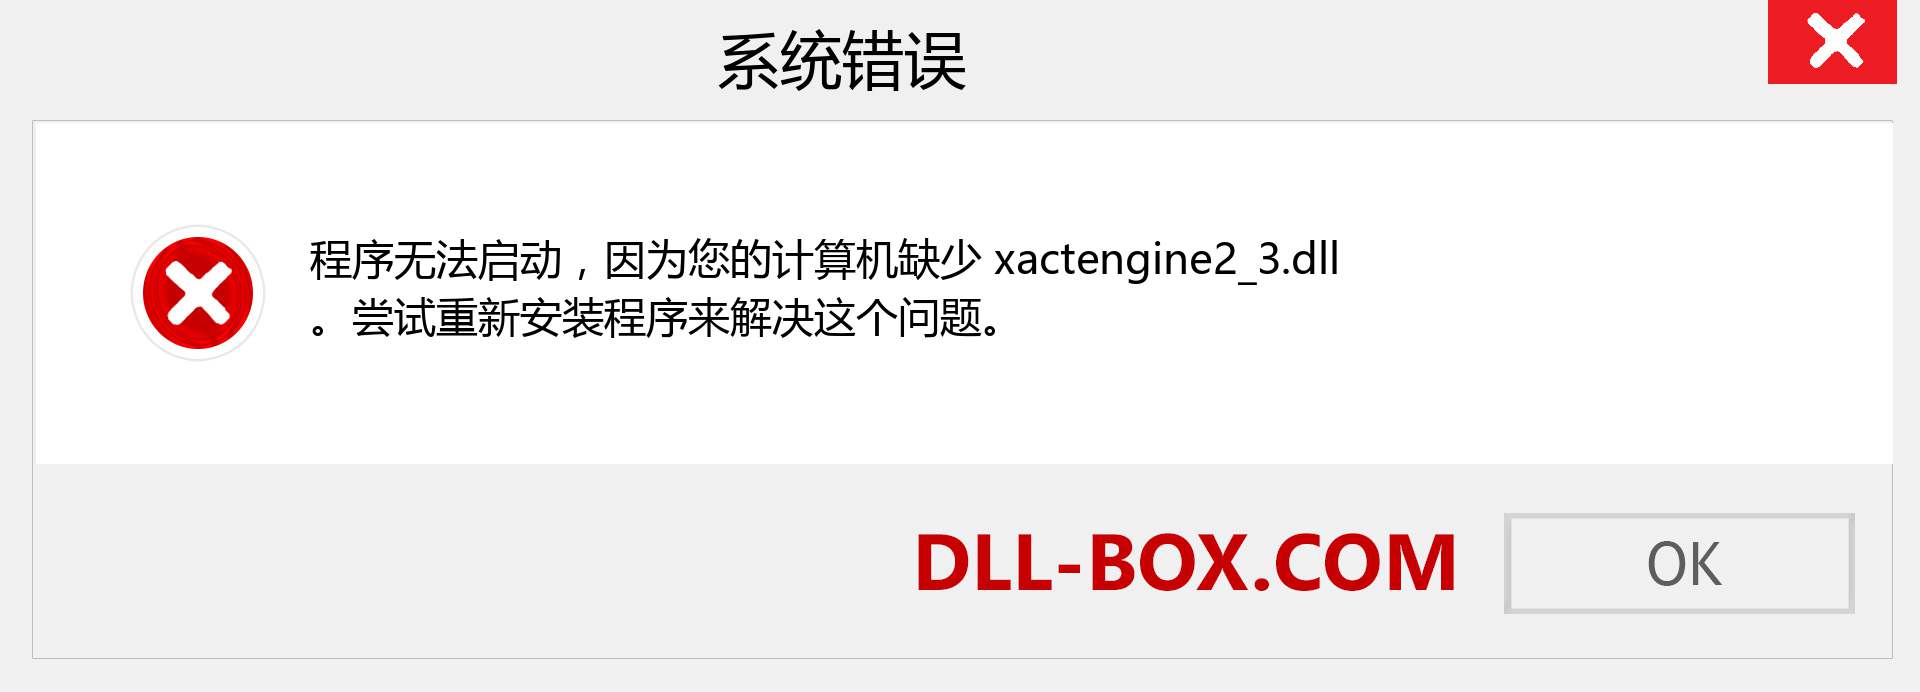 xactengine2_3.dll 文件丢失？。 适用于 Windows 7、8、10 的下载 - 修复 Windows、照片、图像上的 xactengine2_3 dll 丢失错误